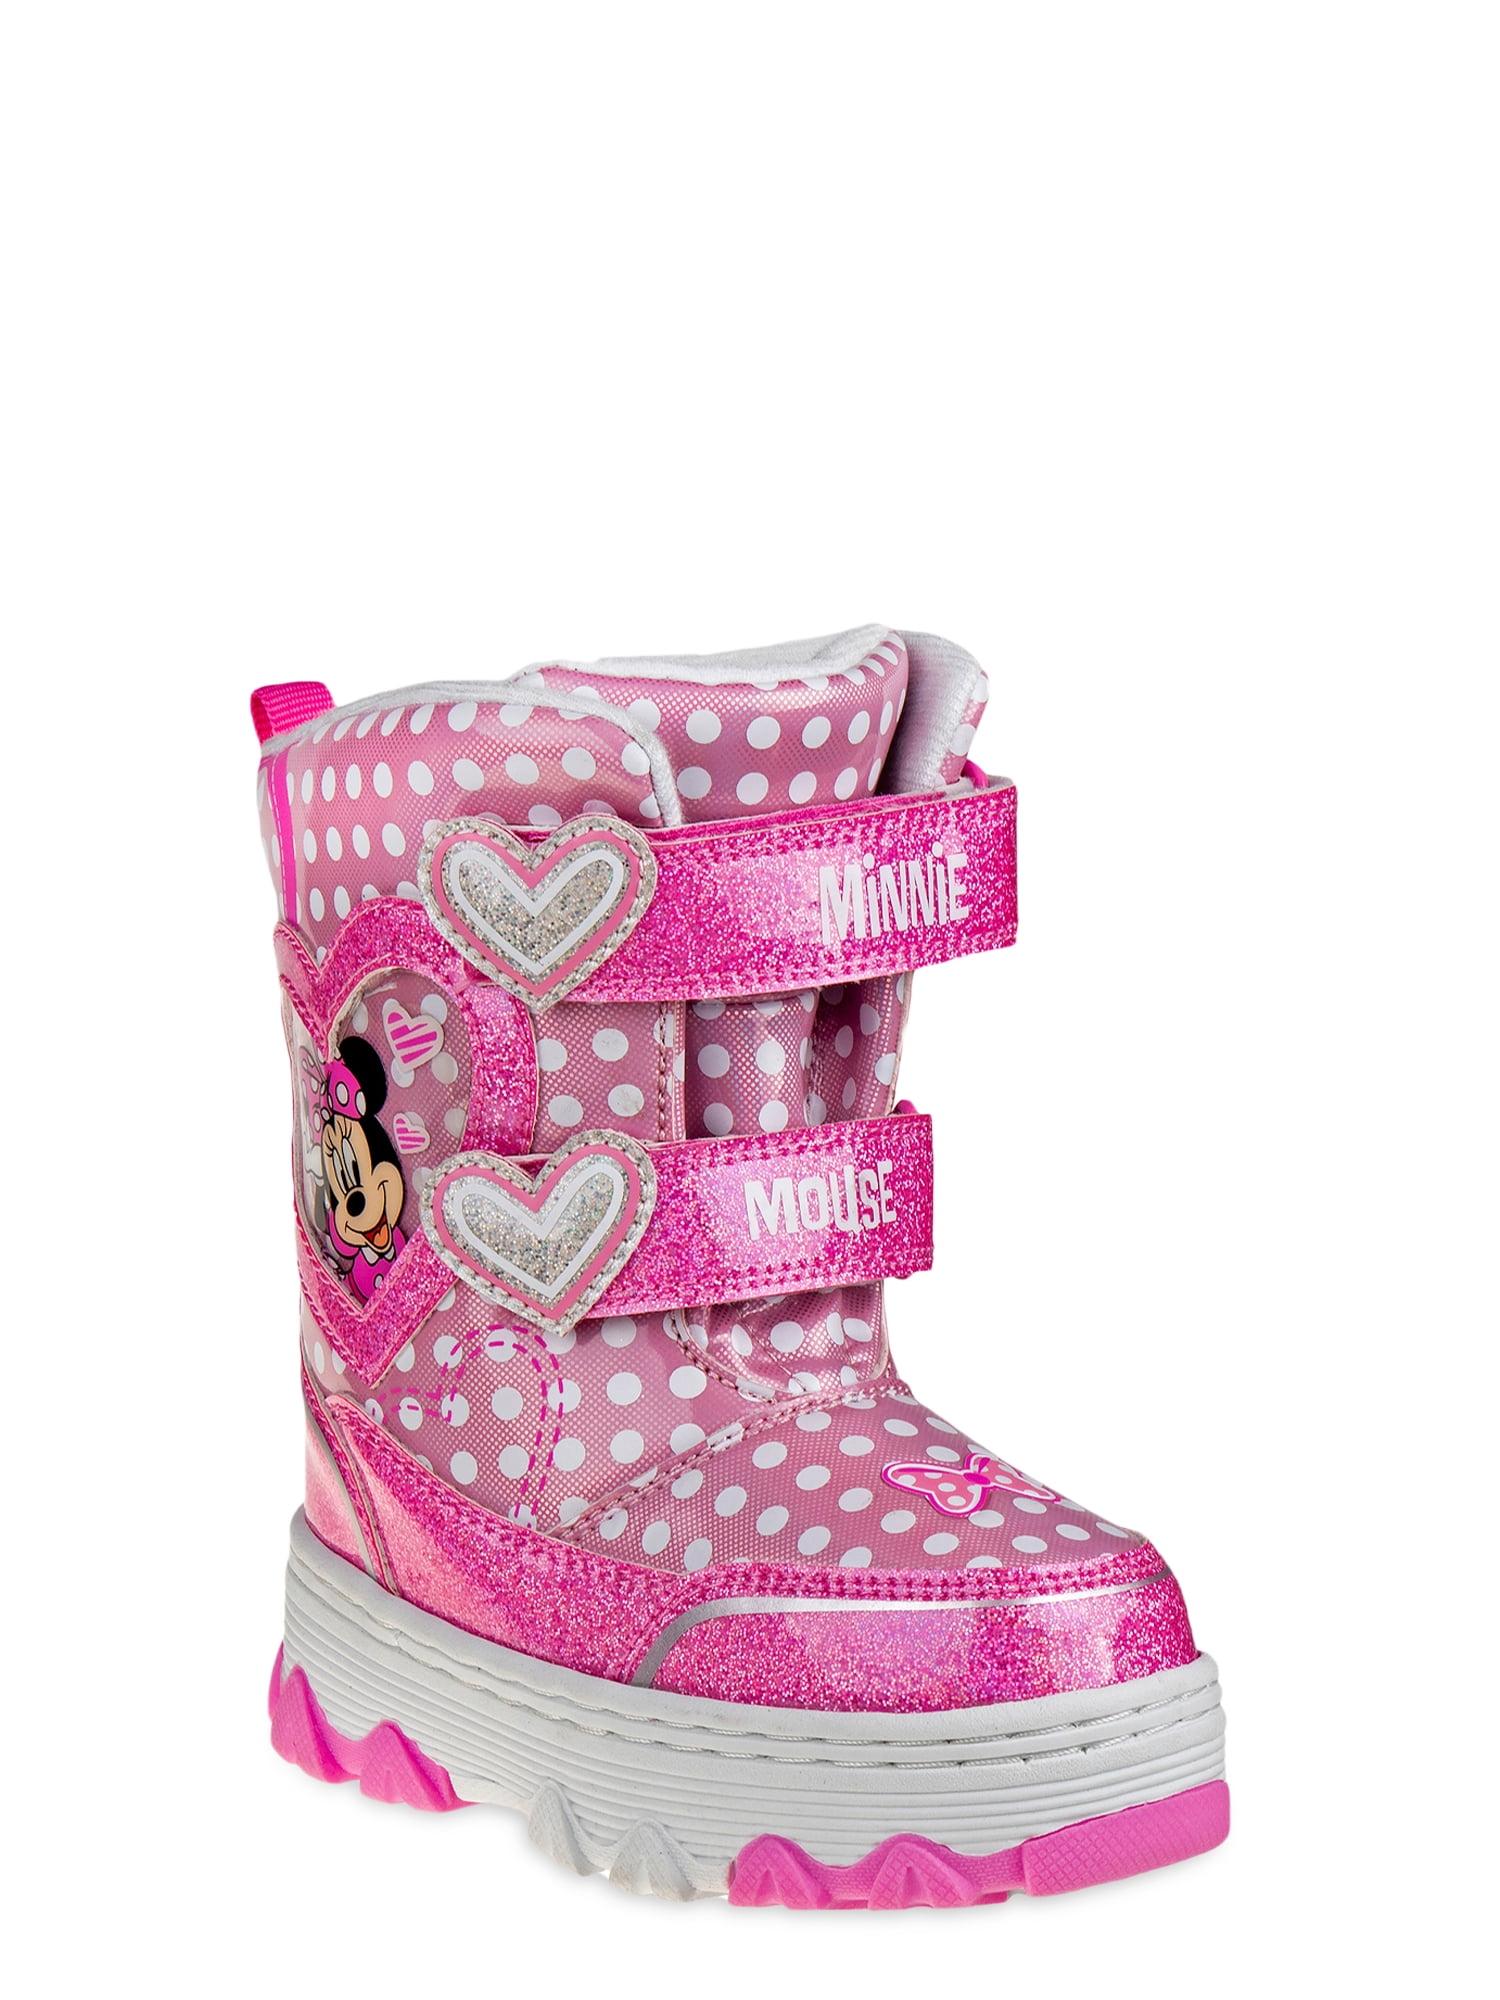 Minnie Mouse Heart Print Snow Boot (Toddler Girls) - Walmart.com